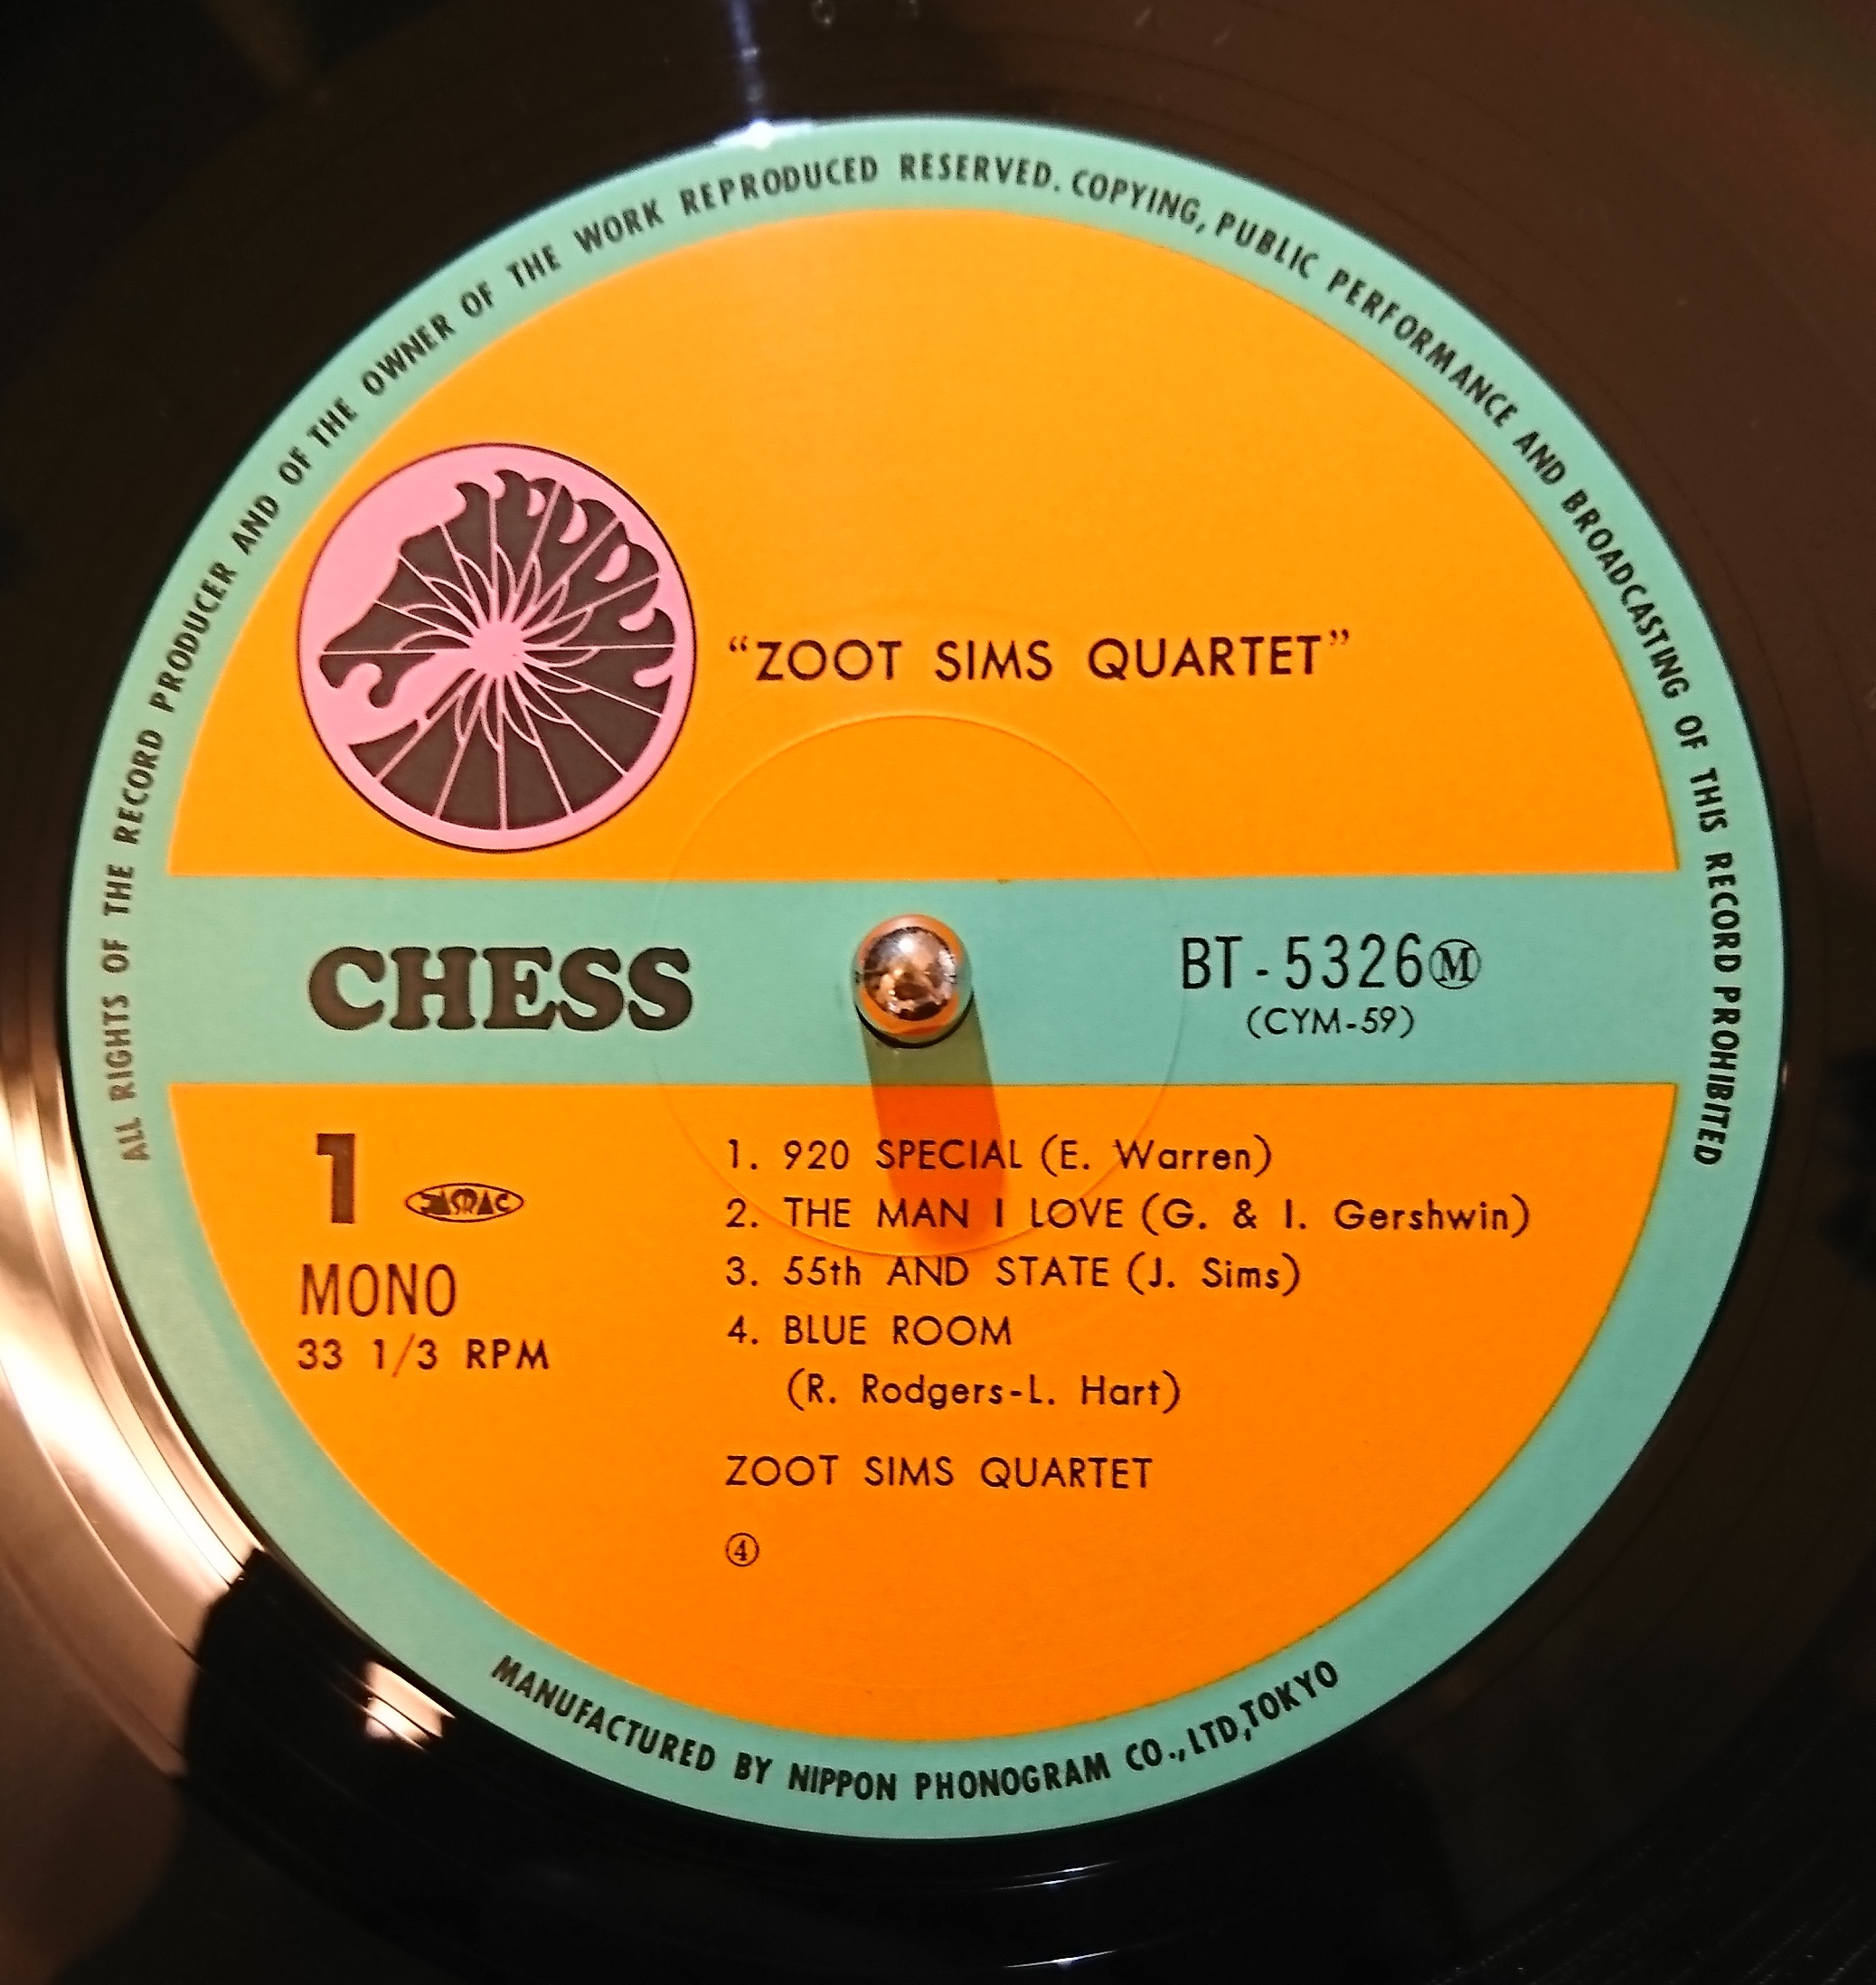 Zoot Sims Quartet ‎– Zoot | 中古レコード通販・買取のアカル・レコーズ